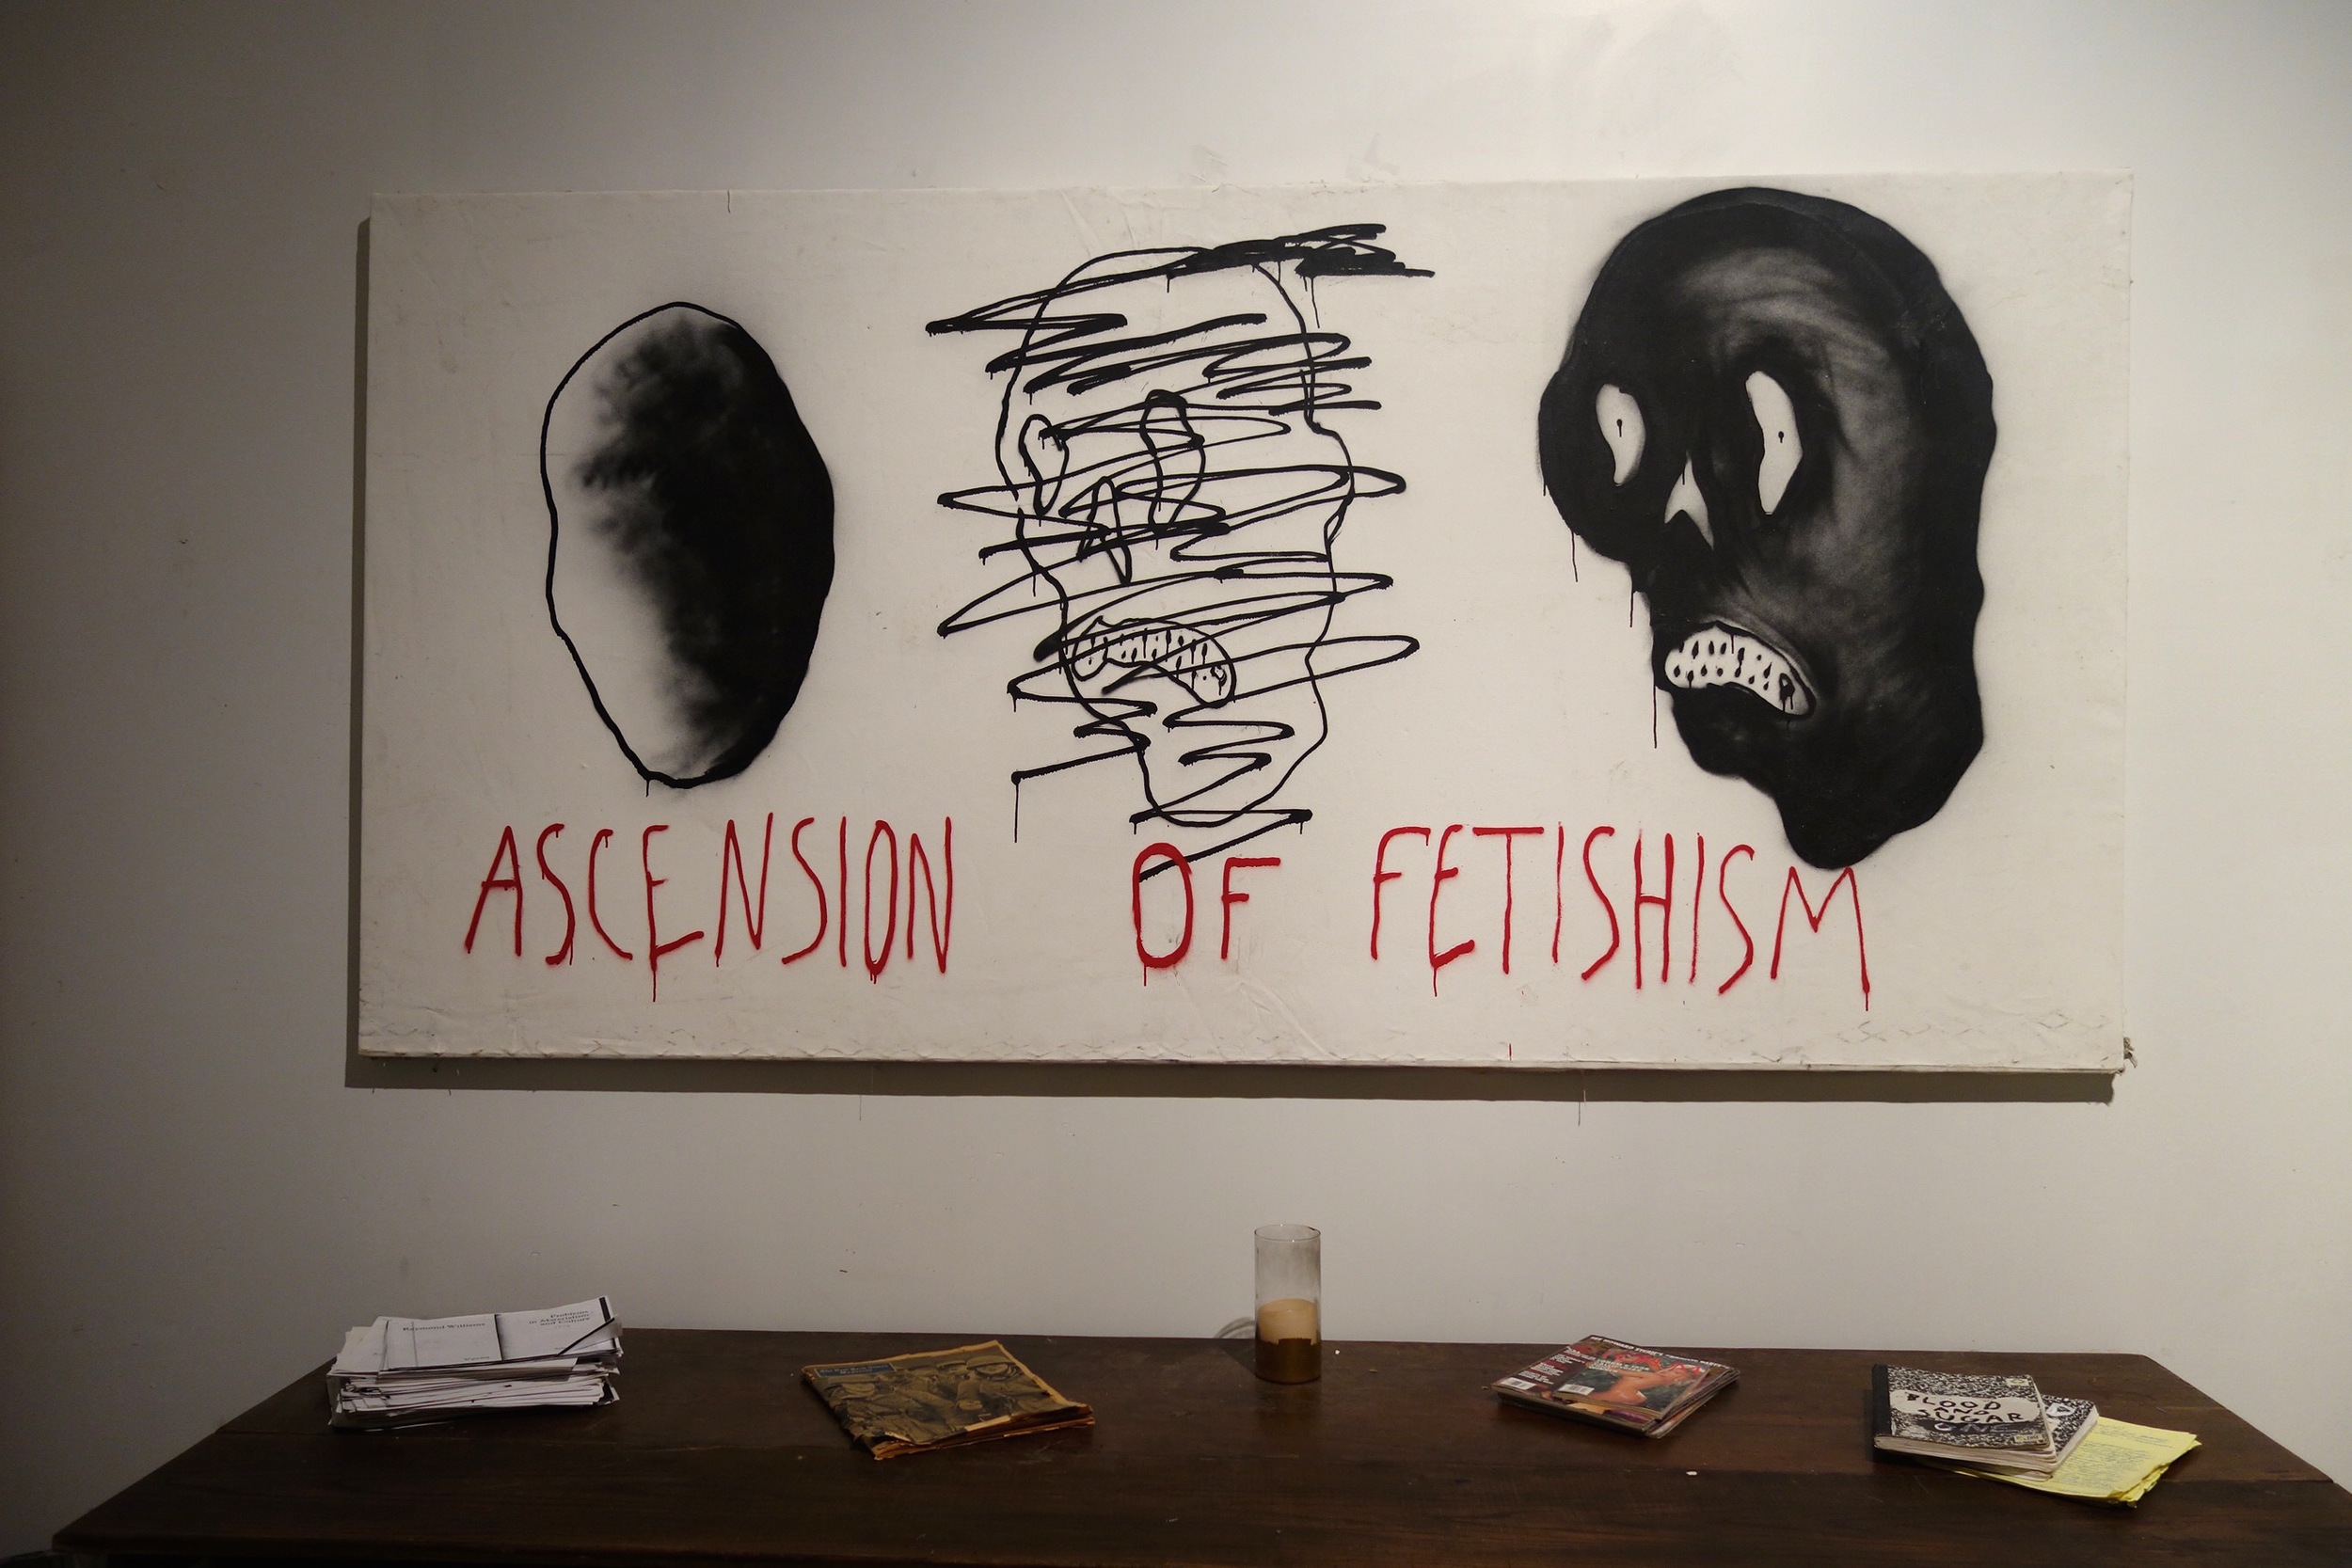 Ascension of Fetishism with desk.jpg